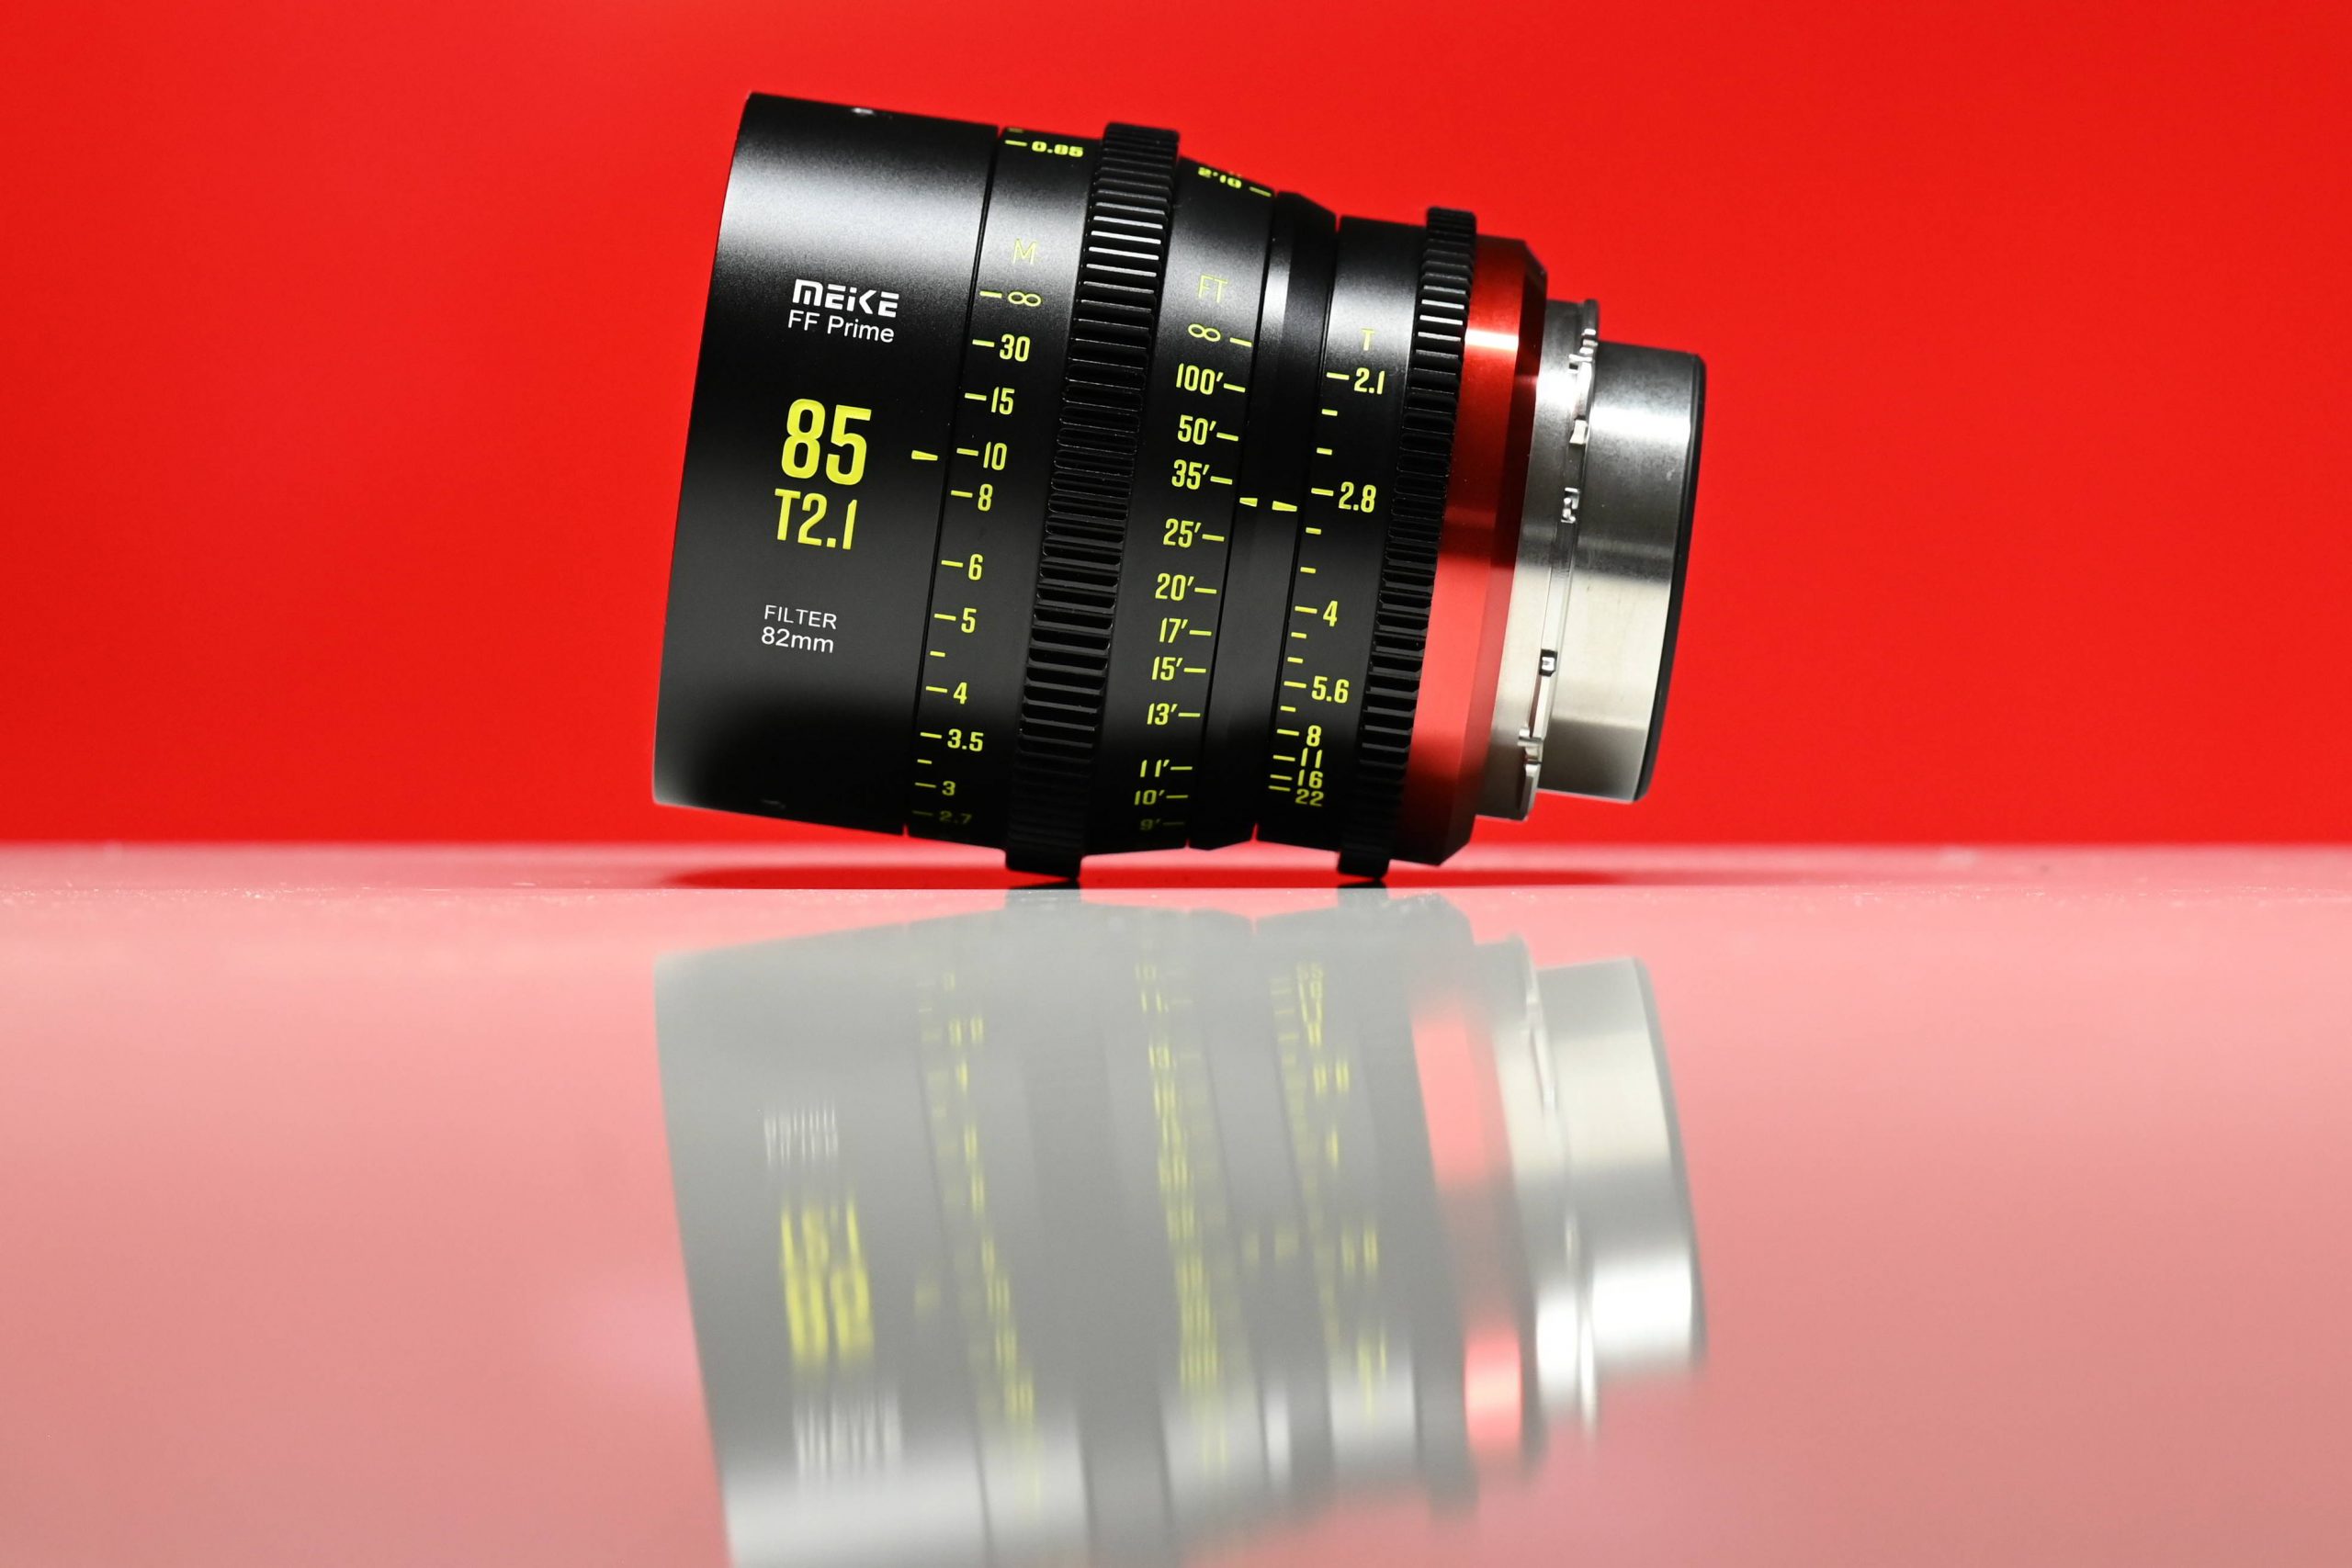 Meike 85mm T2.1 Full Frame Cine Lens Review - Newsshooter